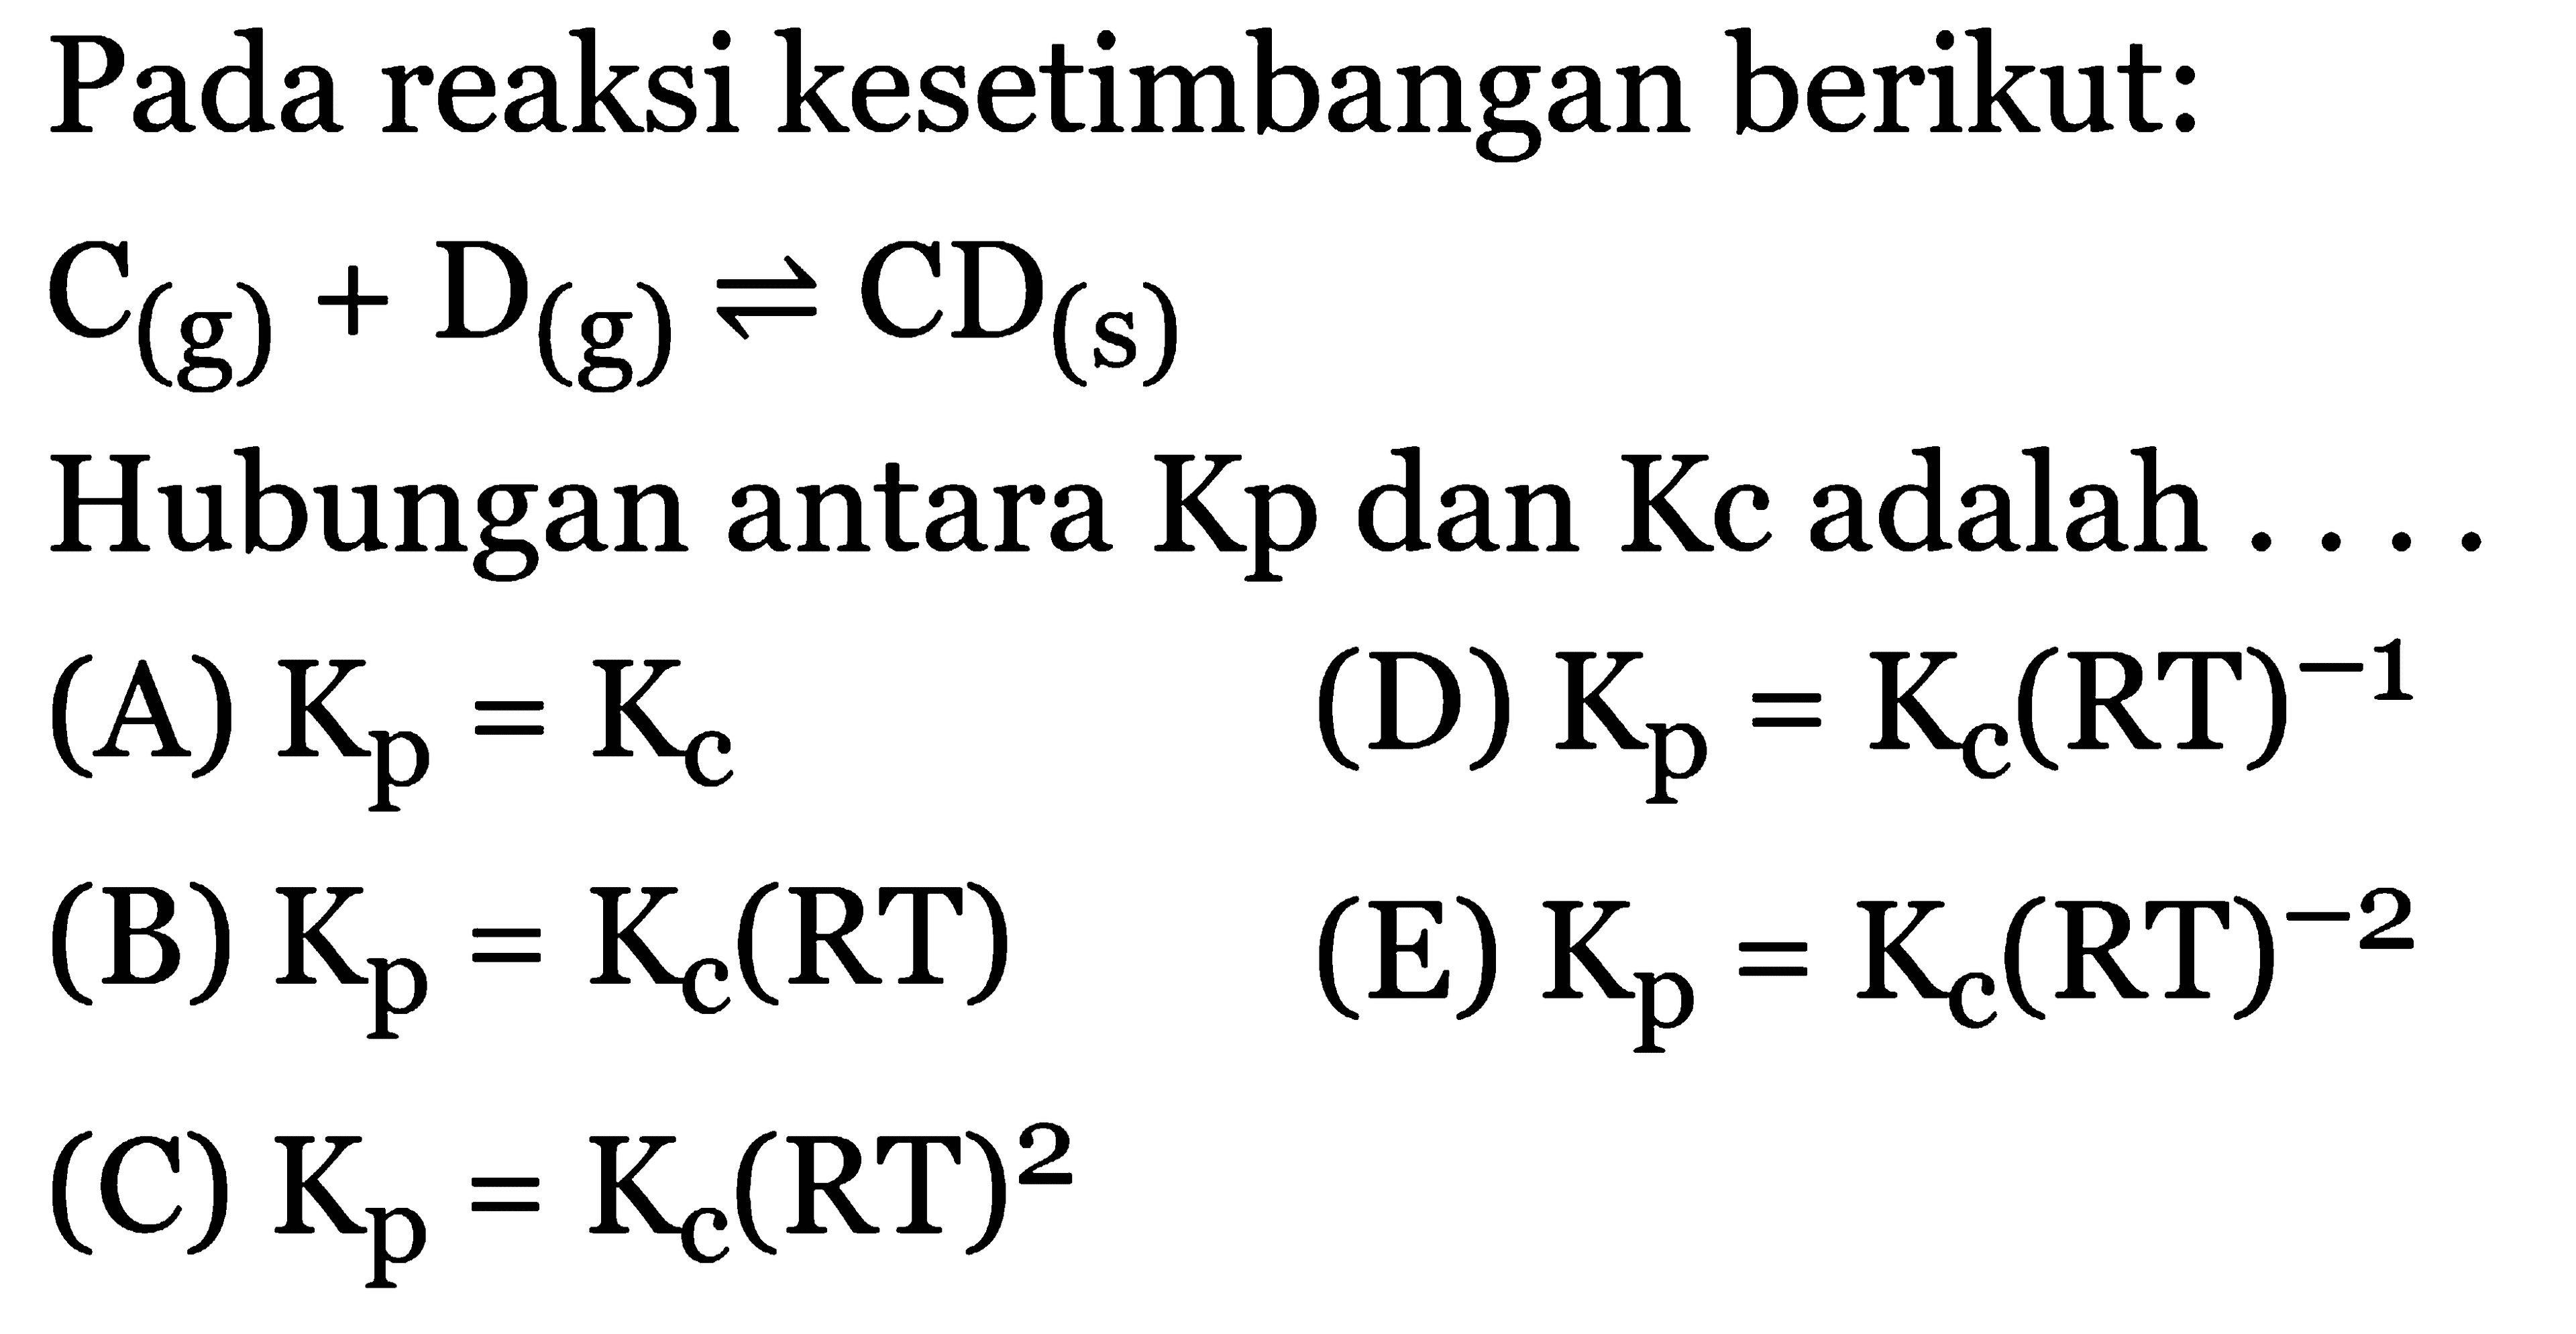 Pada reaksi kesetimbangan berikut: C (g) + D (g) <=> CD (s) Hubungan antara Kp dan Kc adalah (A) Kp = Kc (B) Kp = Kc(RT) (C) Kp = Kc(RT)^2 Kc (D) Kp = Kc(RT)^(-1) (E) Kp = Kc(RT)^(-2)